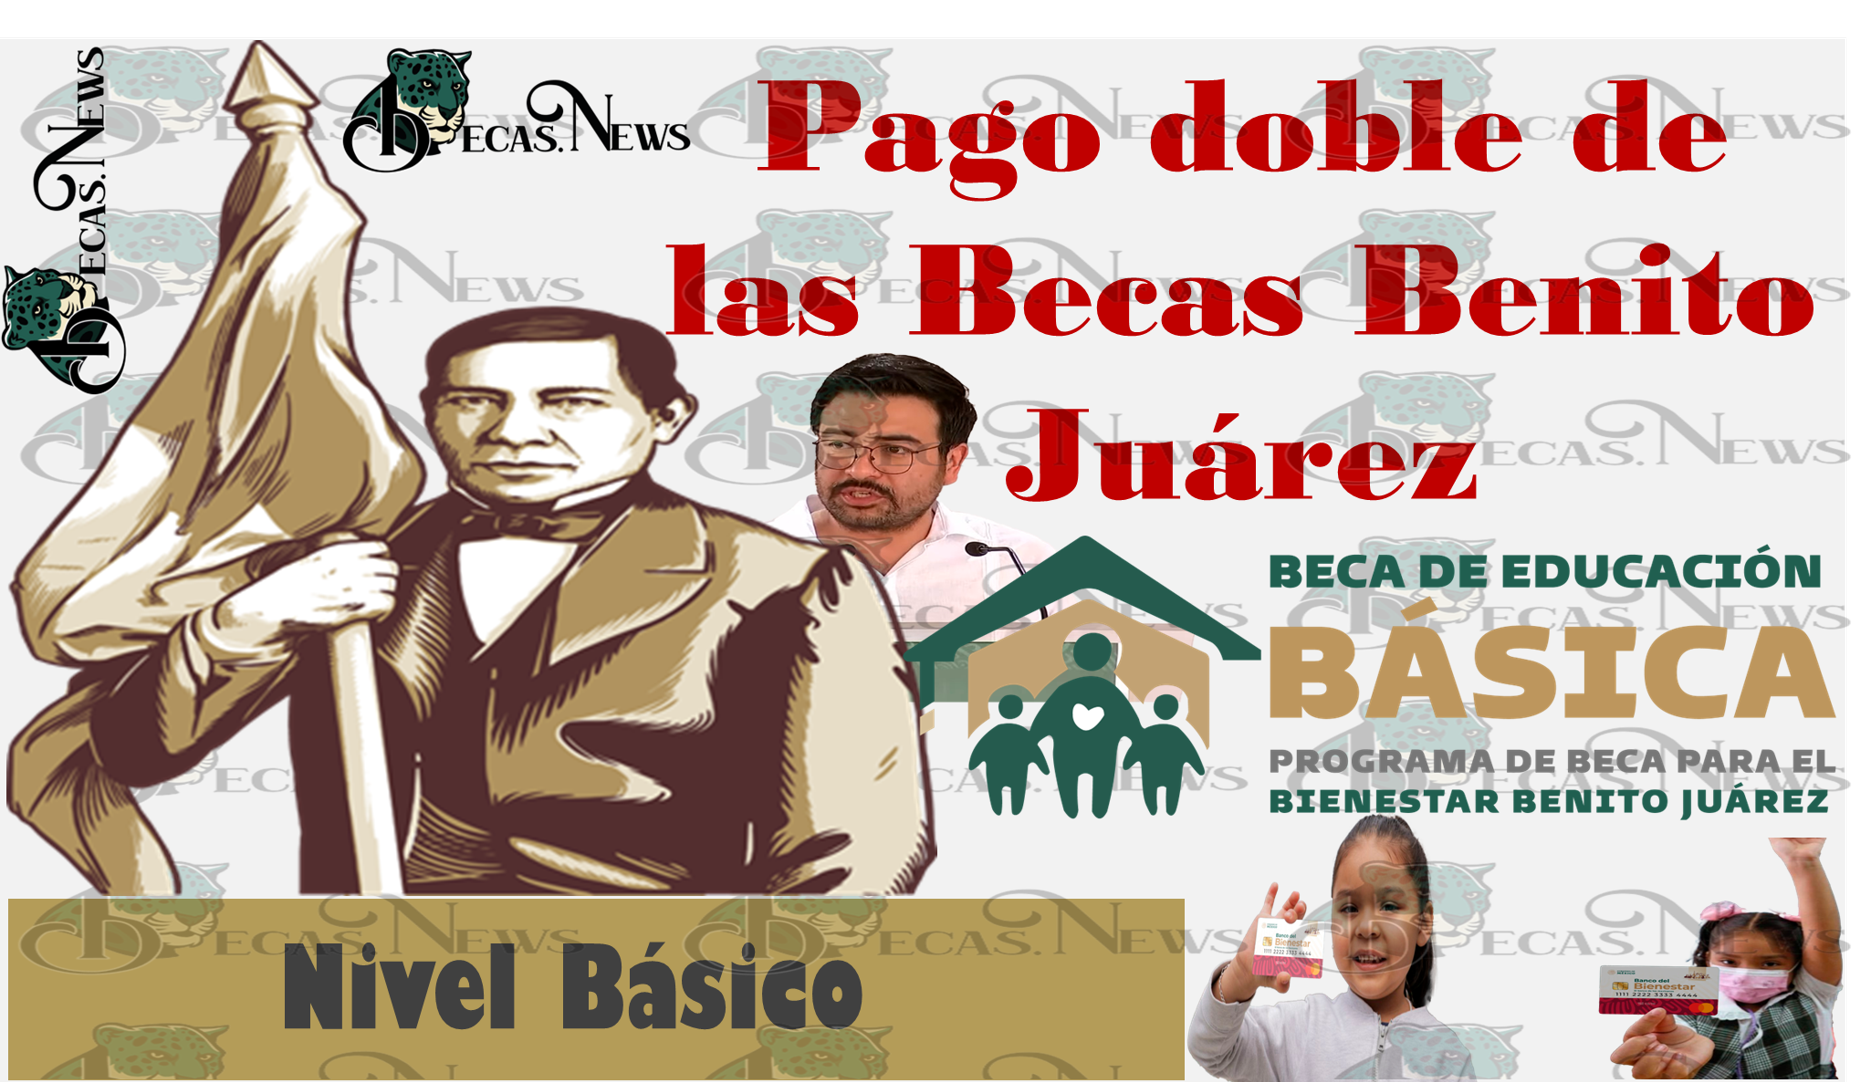 ¿Quieres saber por qué motivo se depositan las Becas Benito Juárez nivel básico este año 2023 como pago doble?